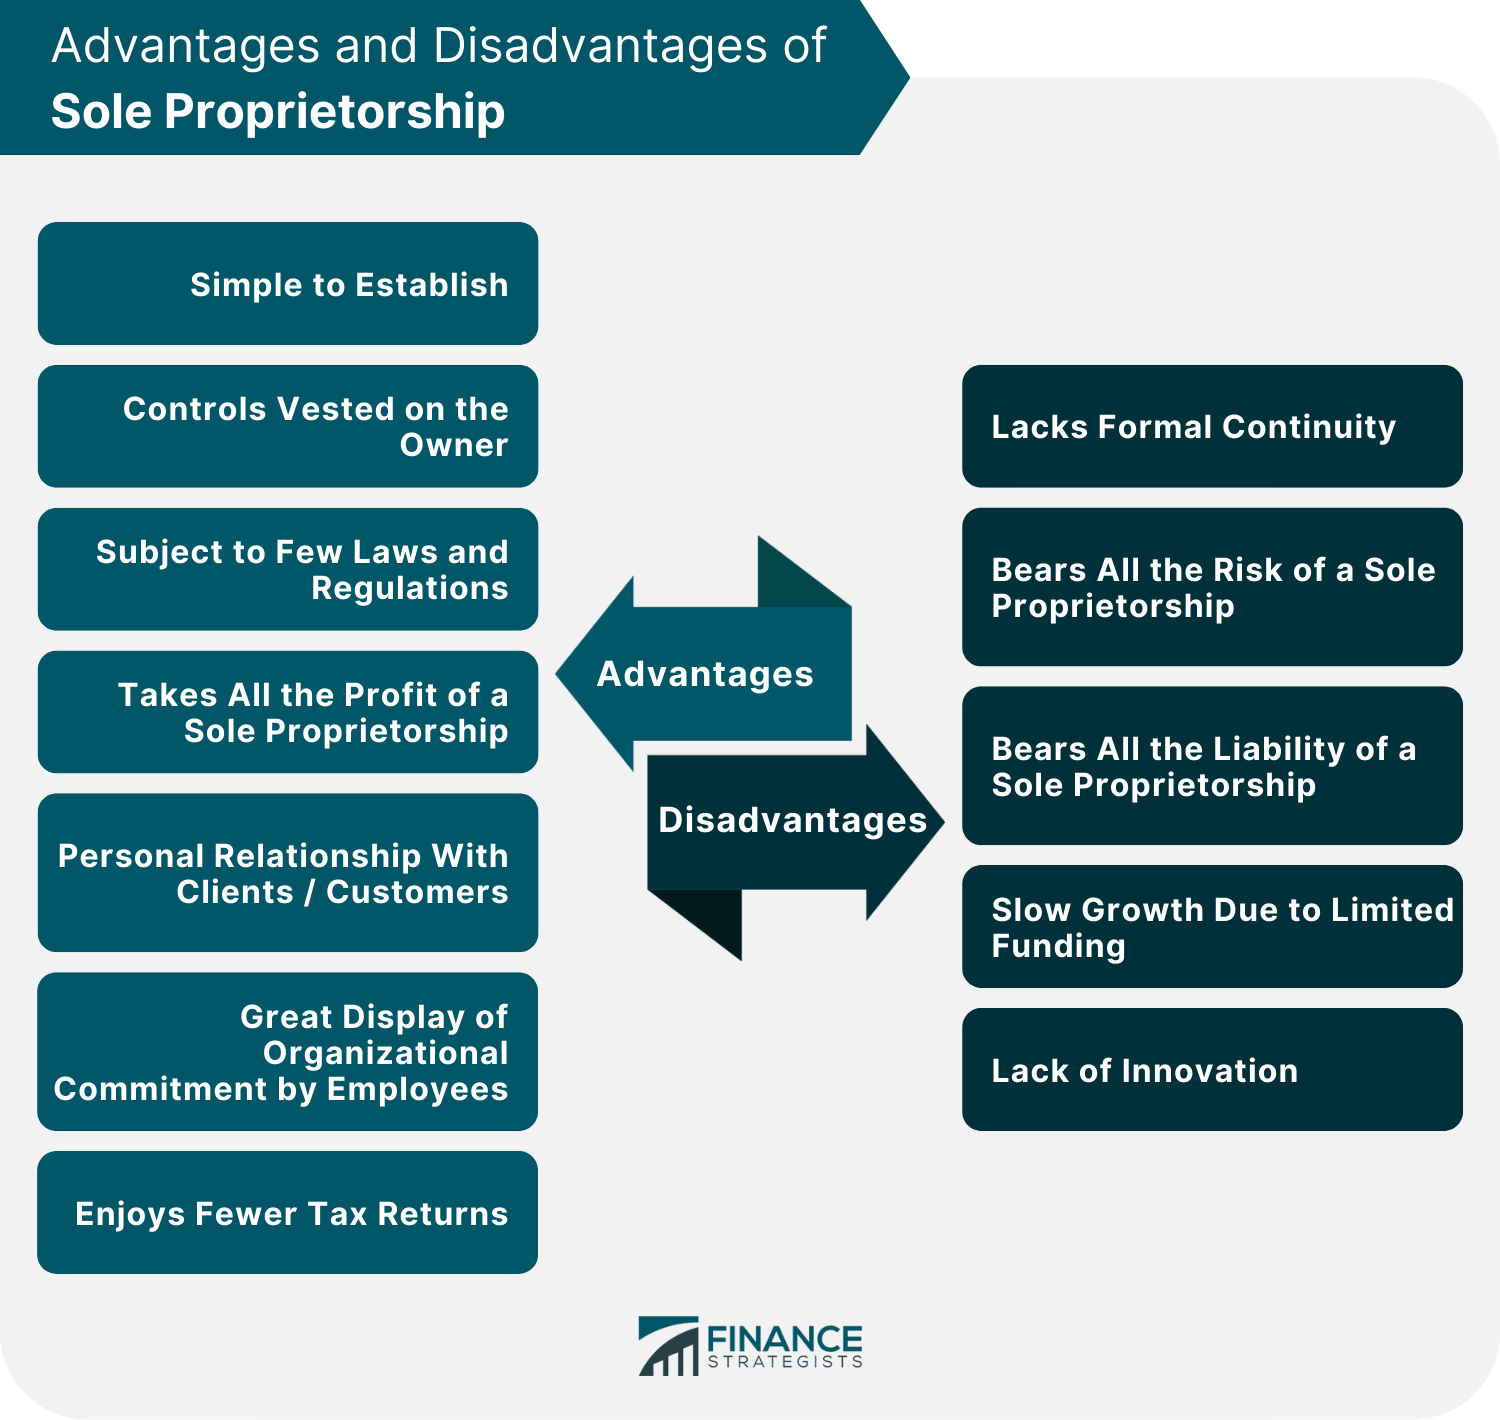 Advantages and Disadvantages of Sole Proprietorship